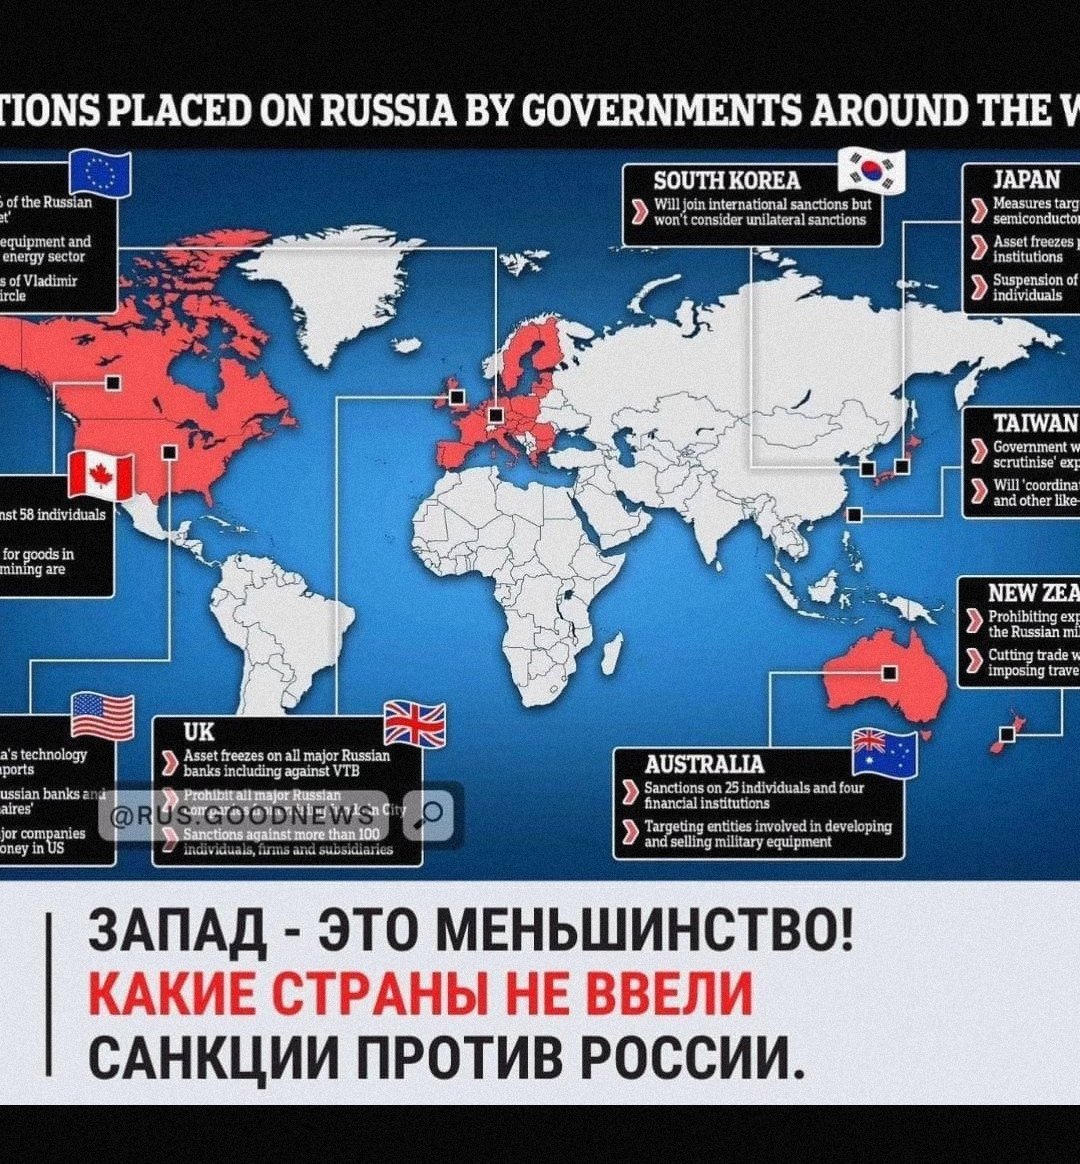 Против втб ввели санкции. Страны против России. Весь мир против России. Страны которые ввели санкции. Страны поддерживающие Россию и Украину.